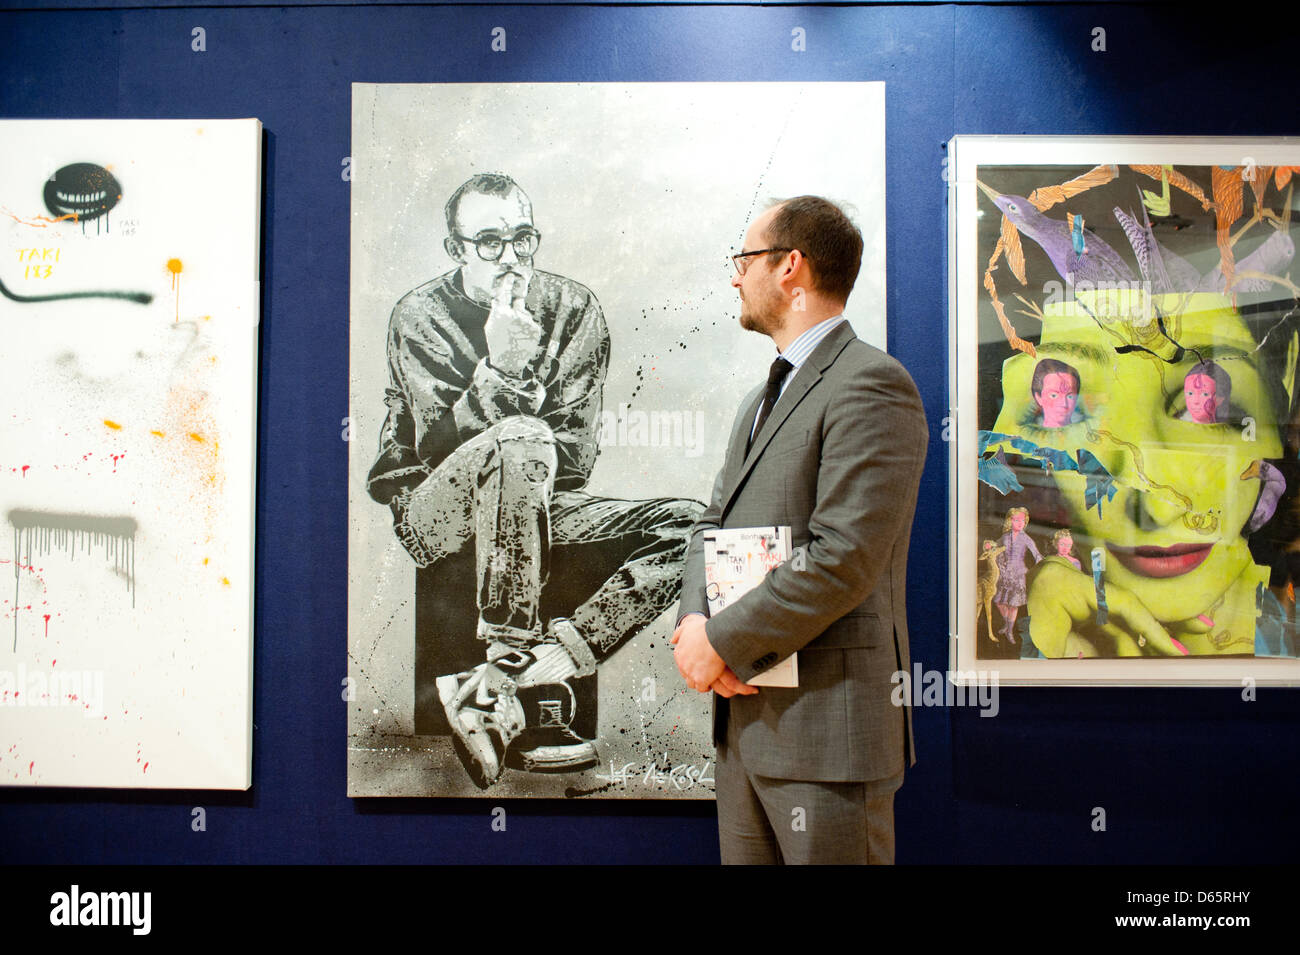 London, UK. 12. April 2013. ein Mitarbeiter von Bonhams stellt neben einer Leinwand von Jef Aerosol mit dem Titel "Keith Haring" während der "Urban Art" Auktionsvorschau bei Bonhams. Bildnachweis: Piero Cruciatti / Alamy Live News Stockfoto